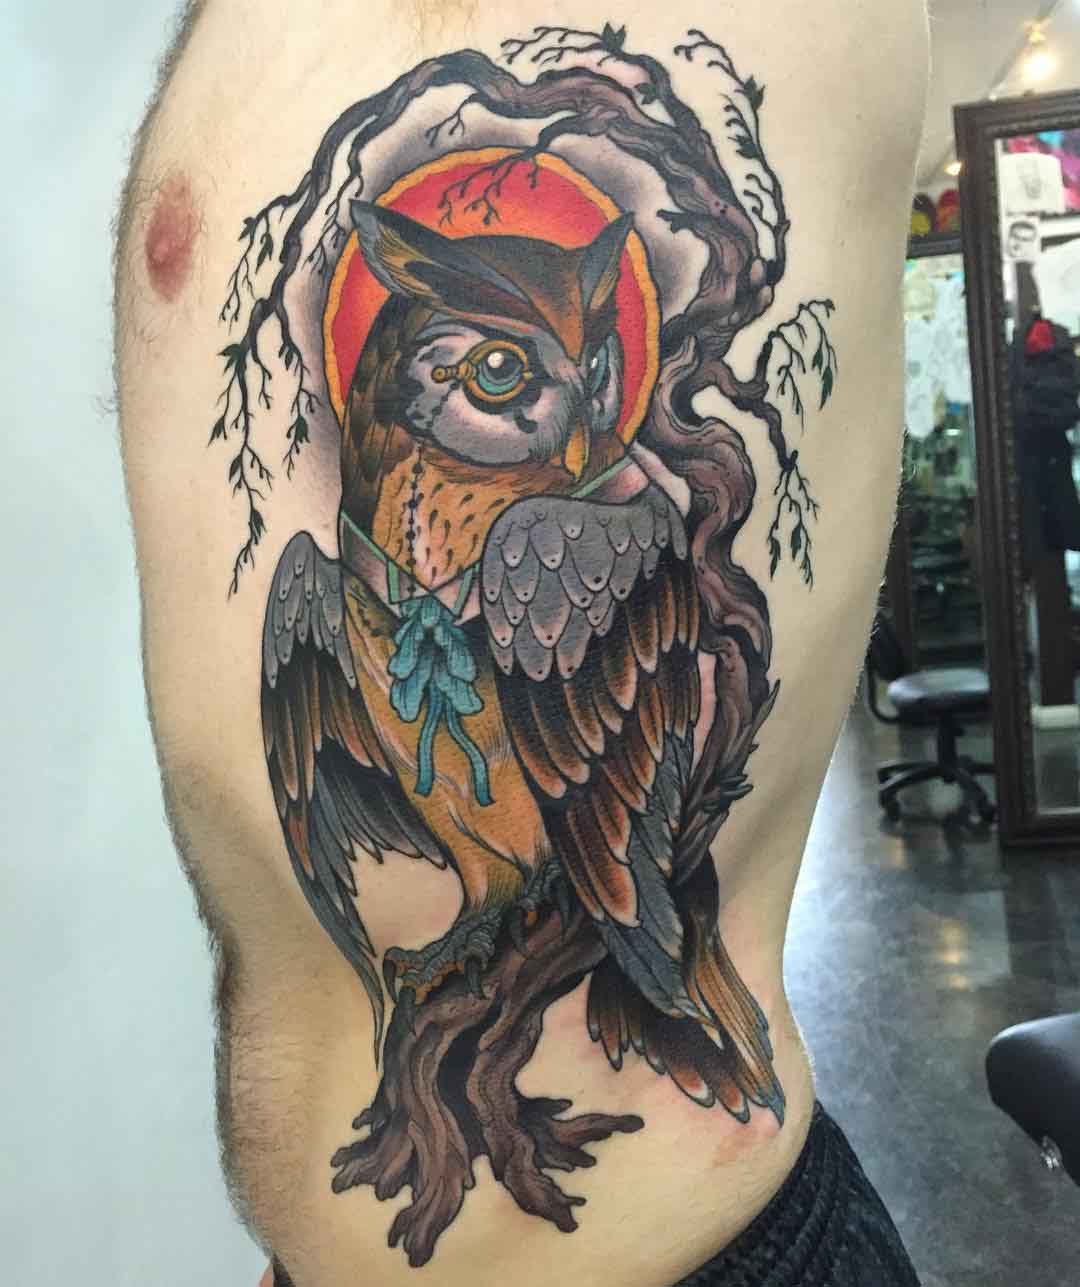 Owl Side Tattoo - Best Tattoo Ideas Gallery